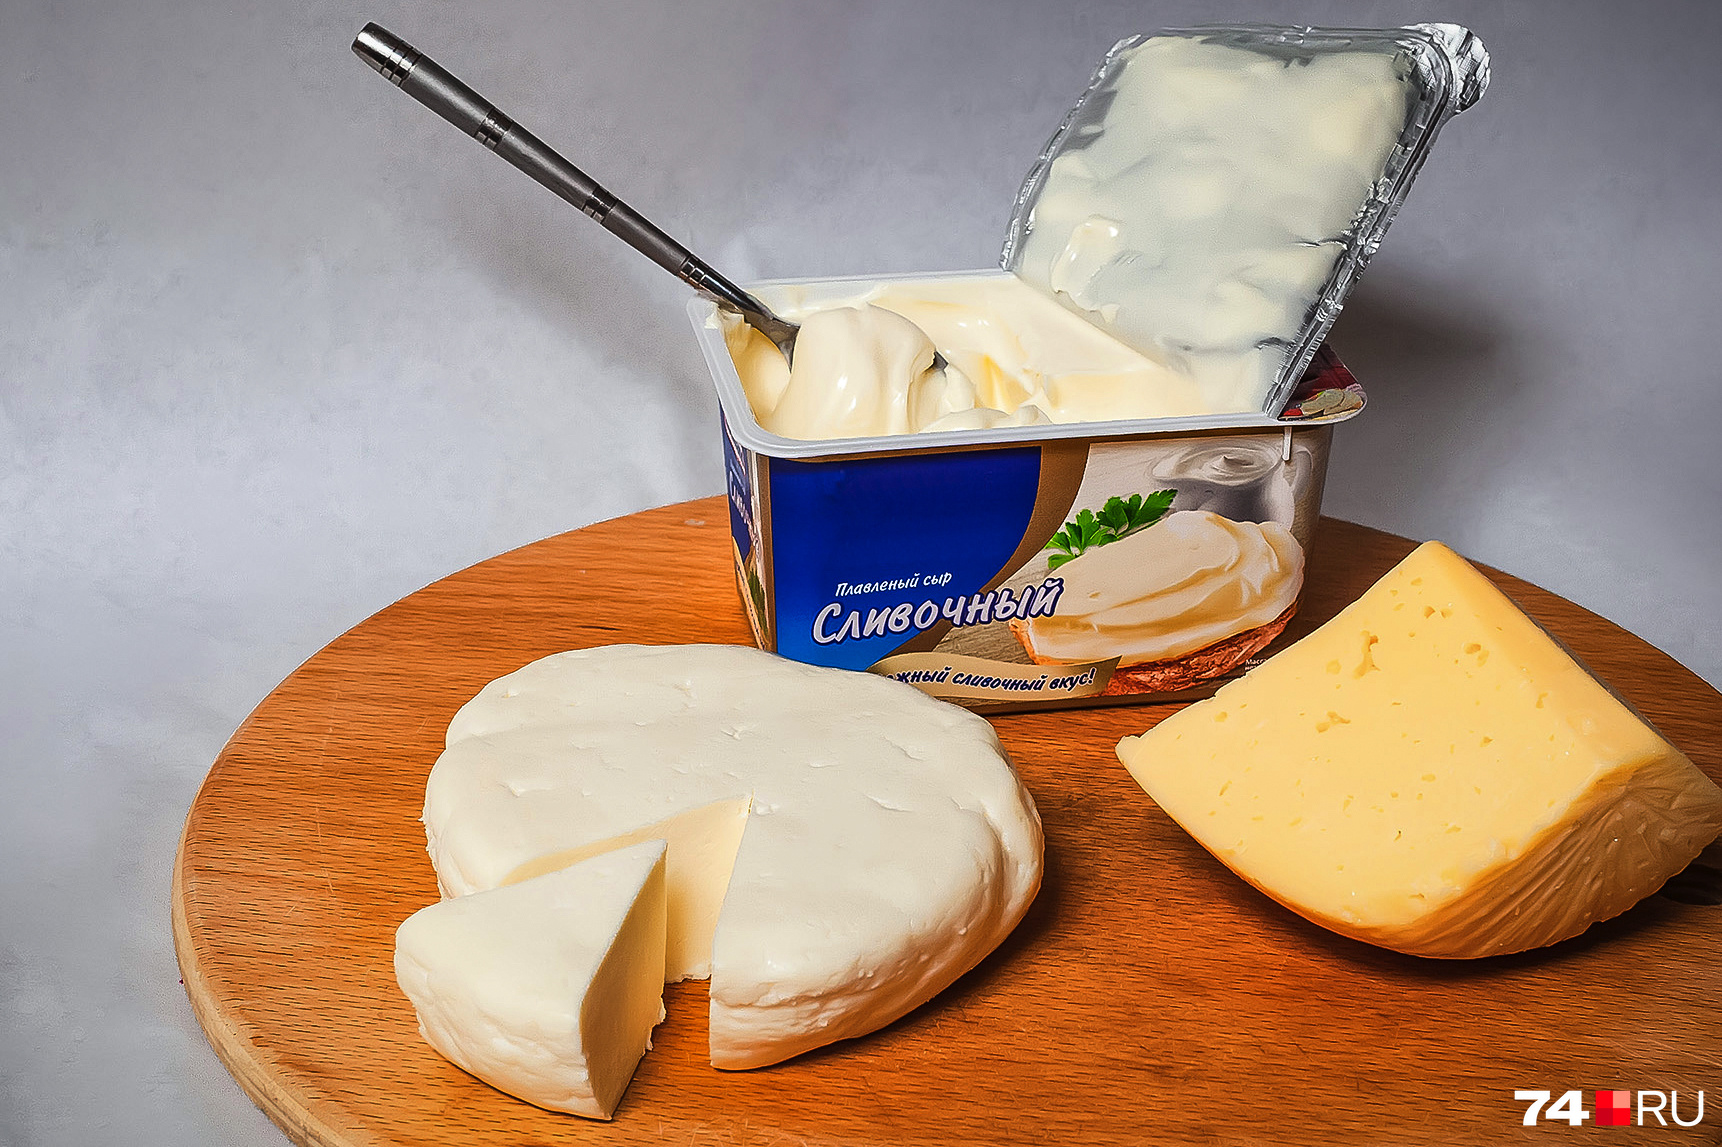 Плавленый сыр не приносит пользы, но и не навредит, если вы изредка будете им завтракать<br><br>